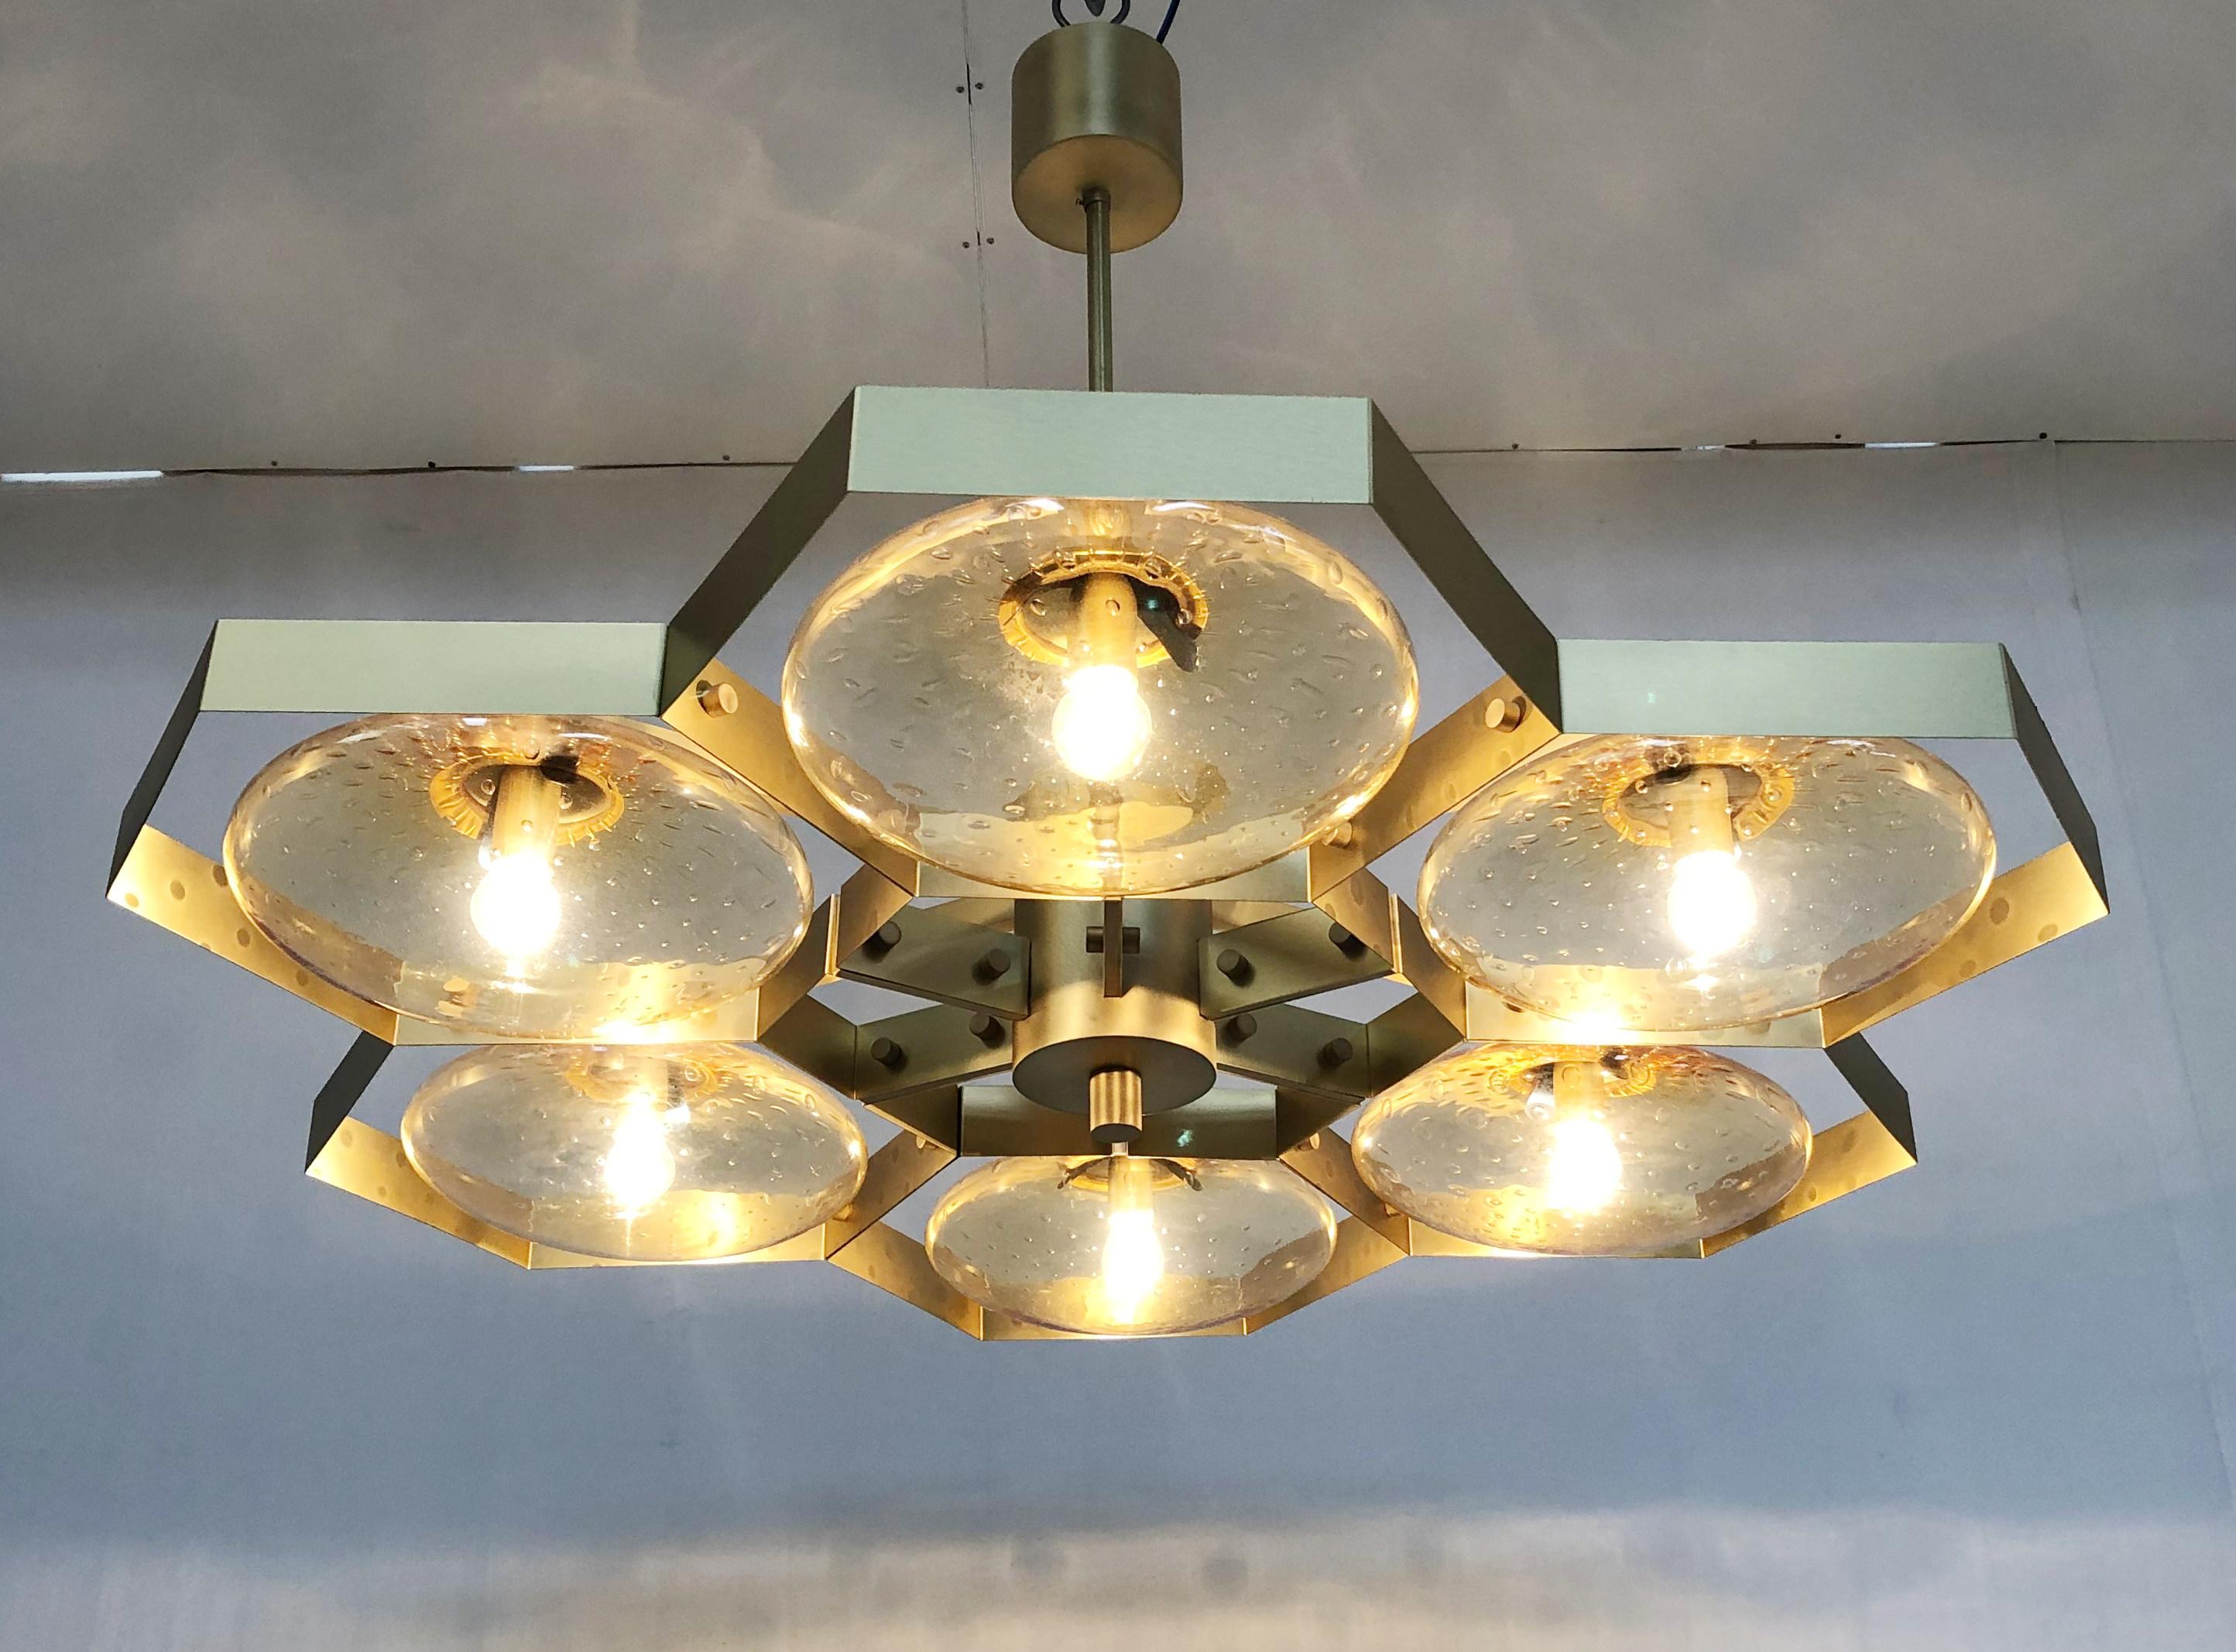 Italienischer Kronleuchter mit Murano-Glasschirmen auf massivem Messingrahmen / Made in Italy
Entworfen von Fabio Ltd, inspiriert von den Stilen Angelo Lelli und Arredoluce
6 Leuchten / E12 oder E14 / je max. 40W
Maße: Durchmesser 43 Zoll, Höhe 30